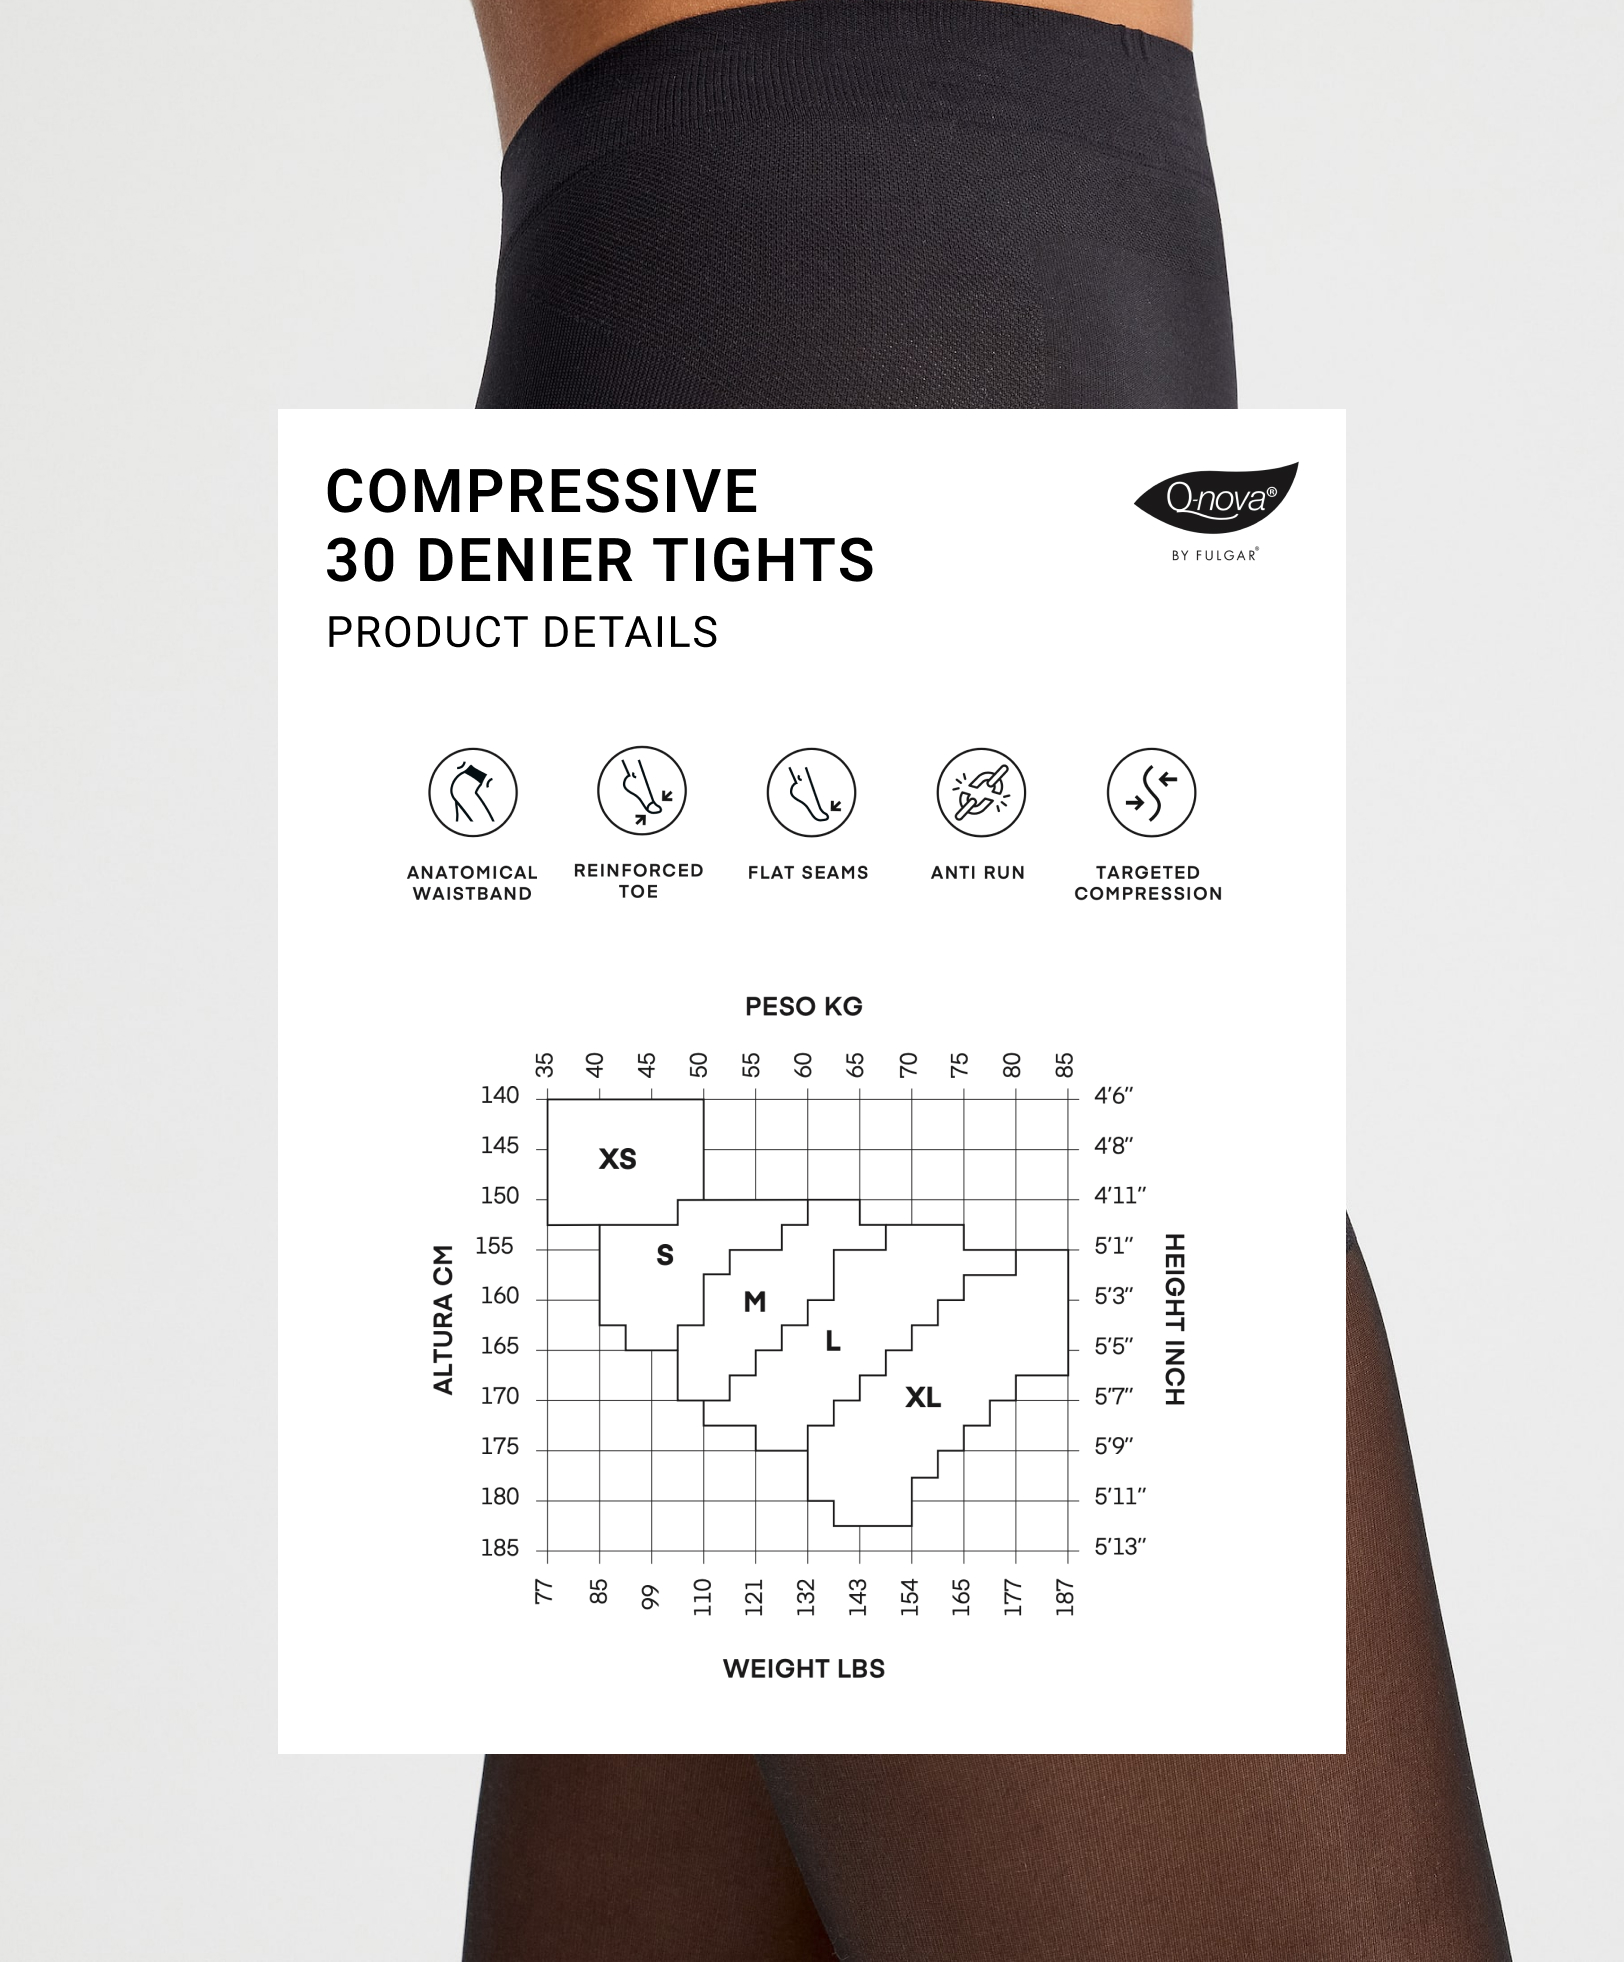 Compressive 30 denier tights